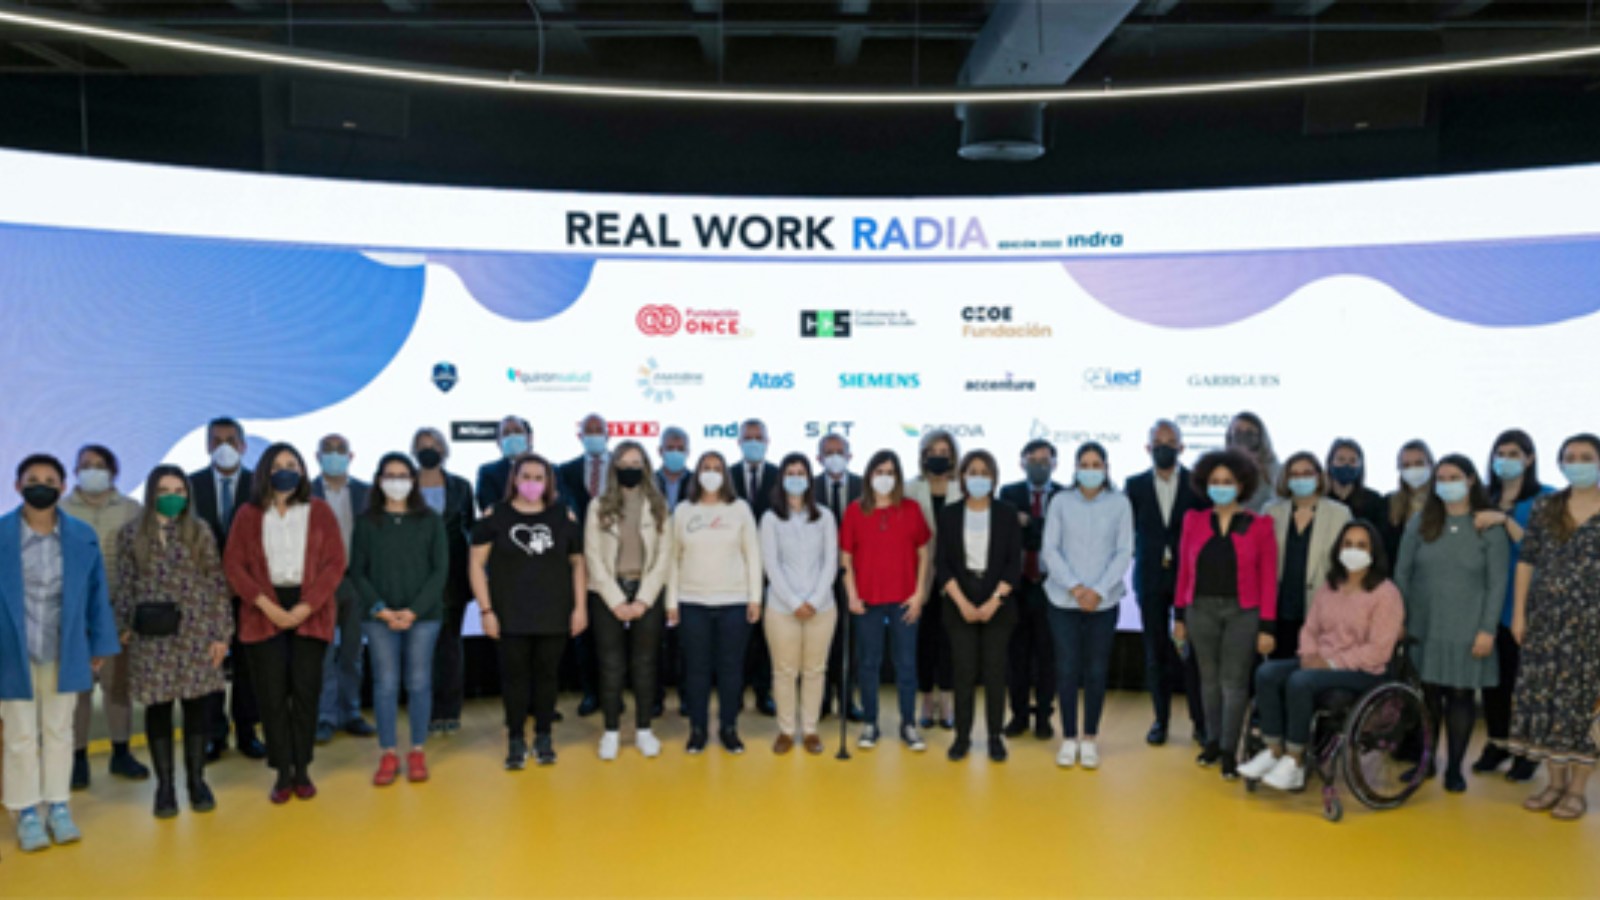 Fotografía de las personas participantes en la presentación de la tercera edición del programa Radia